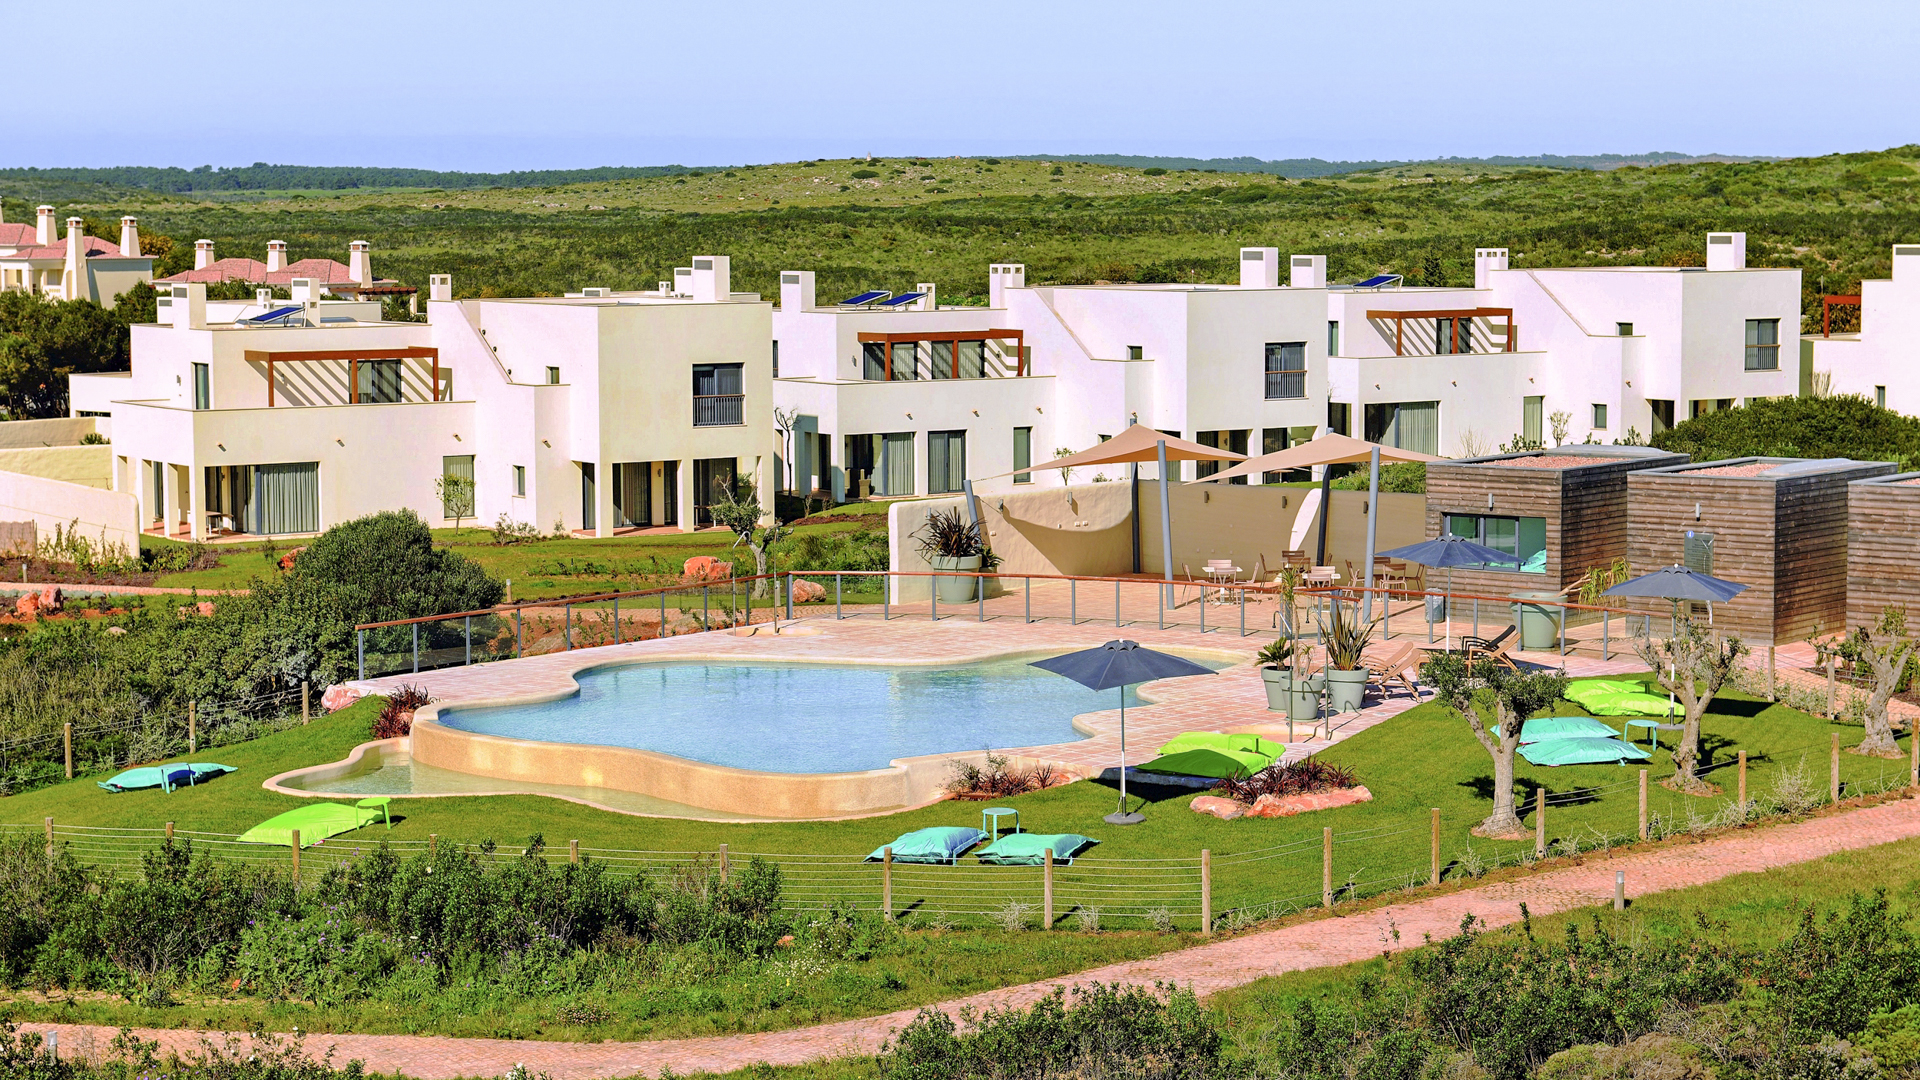 Complexe touristique de luxe près de la plage, Sagres | S1297 Les "Garden Houses" au mobilier de luxe sont situées dans un complexe 5 étoiles, à quelques mètres de la plage. Une excellente opportunité d'investissement locatif dans un endroit magnifique.